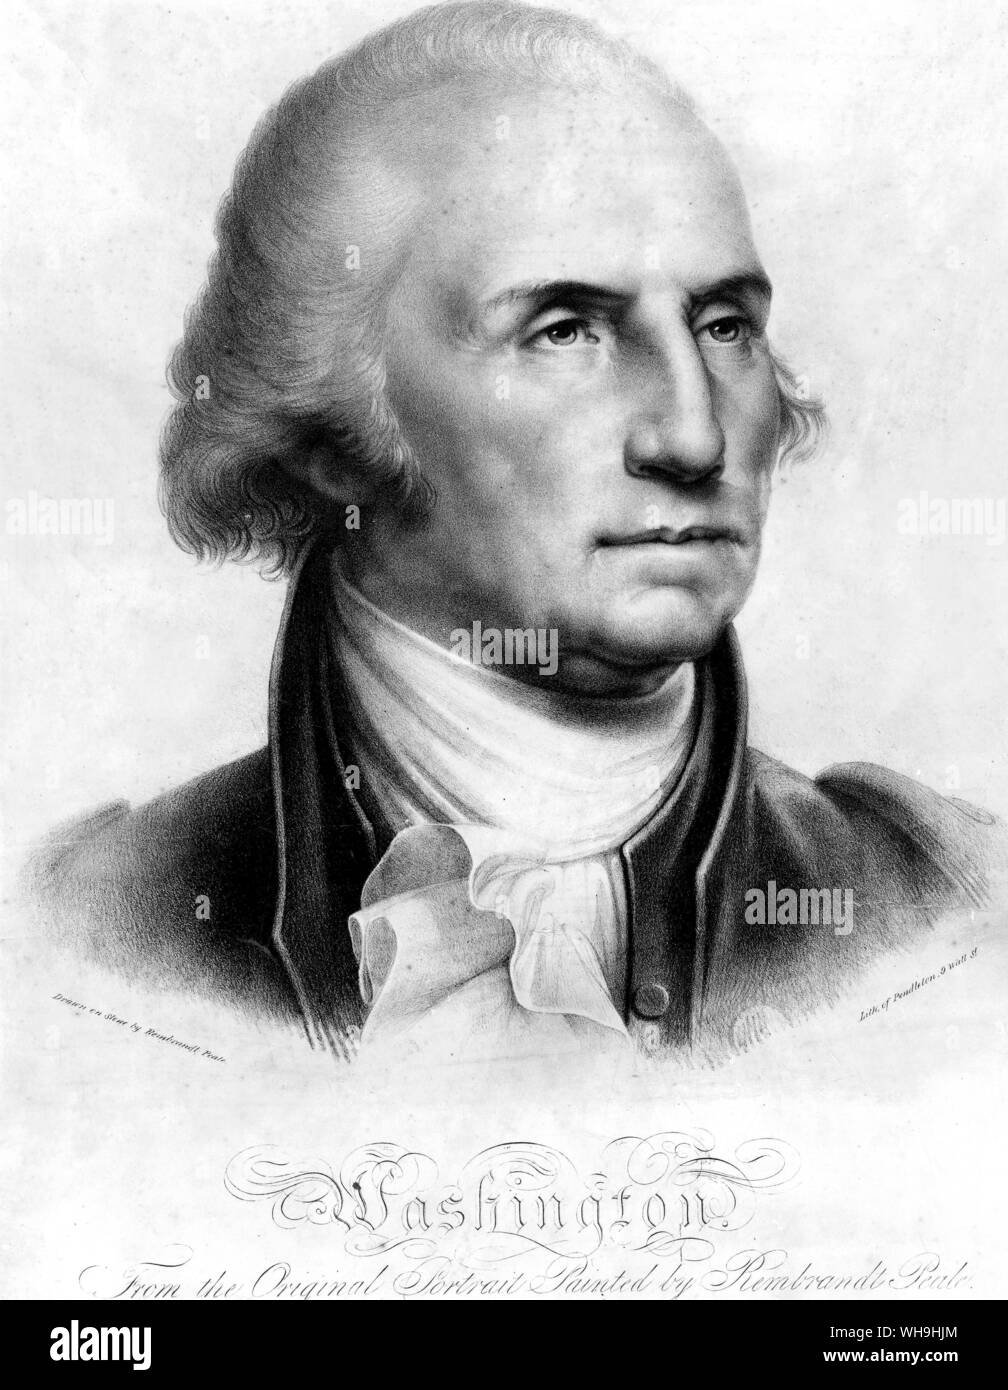 George Washington (1732-1799), il comandante delle forze americane durante la guerra rivoluzionaria americana e primo presidente degli Stati Uniti d'America. Foto Stock